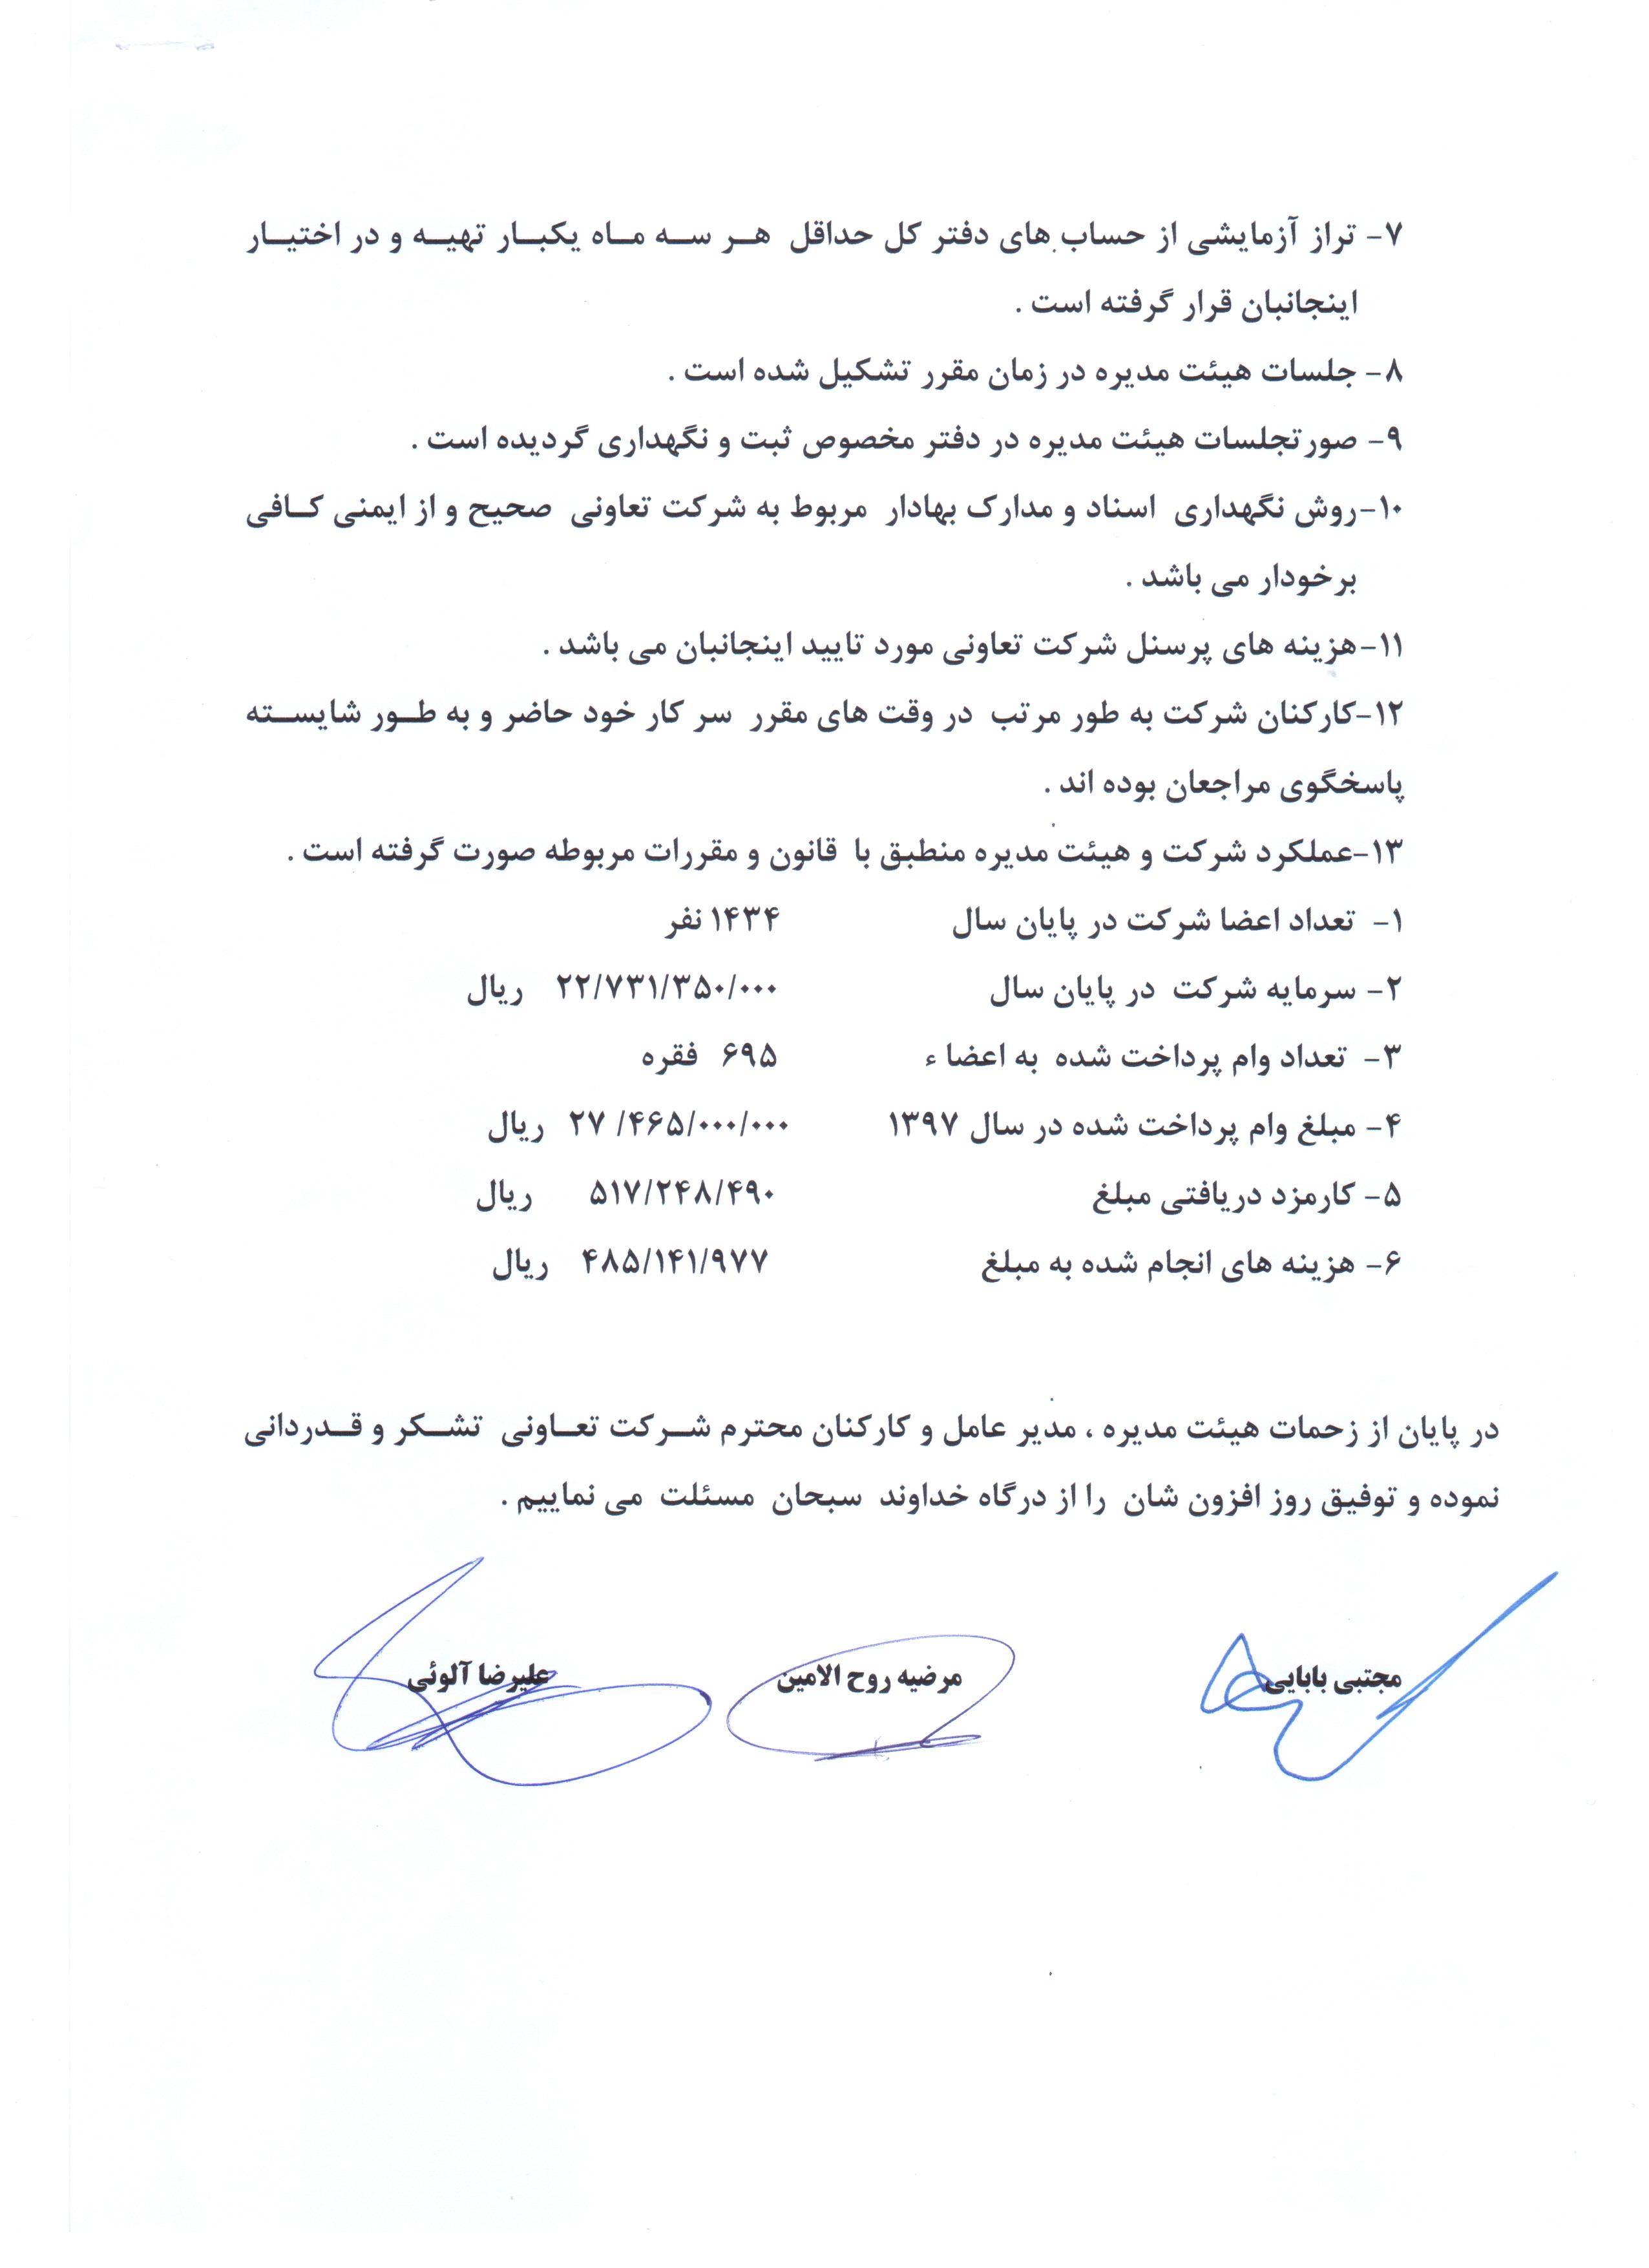 گزارش بازرسان شرکت اعتبار کارکنان بهزیستی اصفهان به مجمع عمومی سالیانه